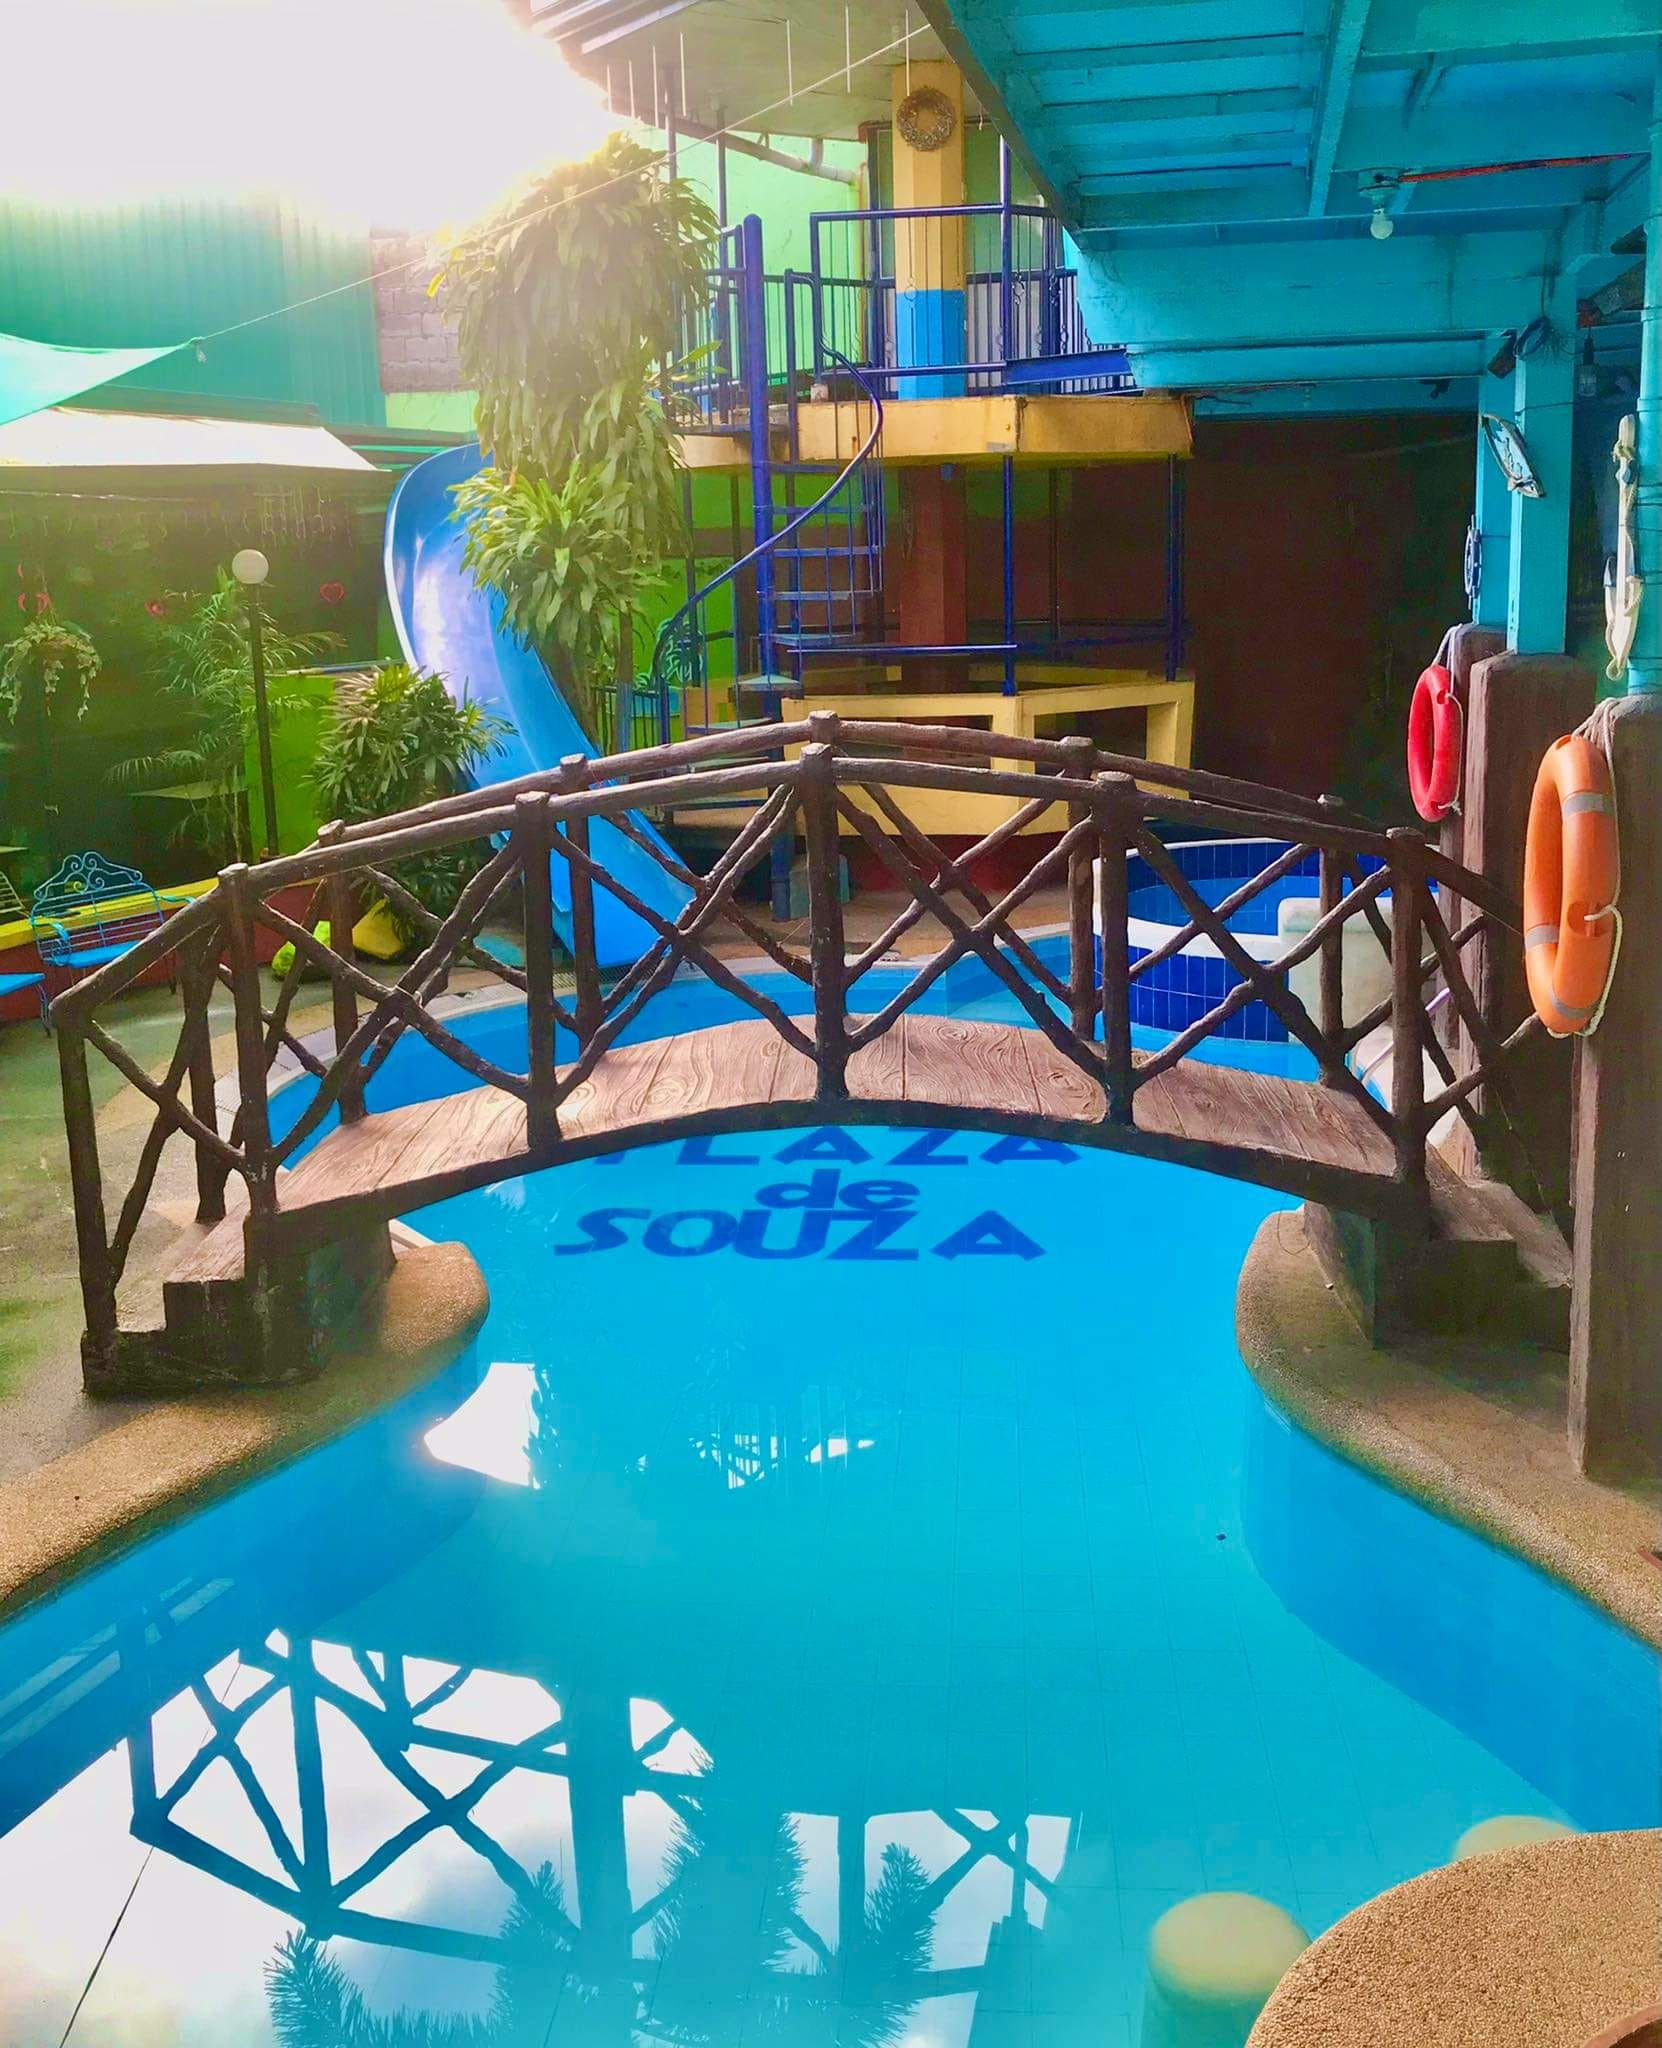 D'Souza Resort & Events Venue